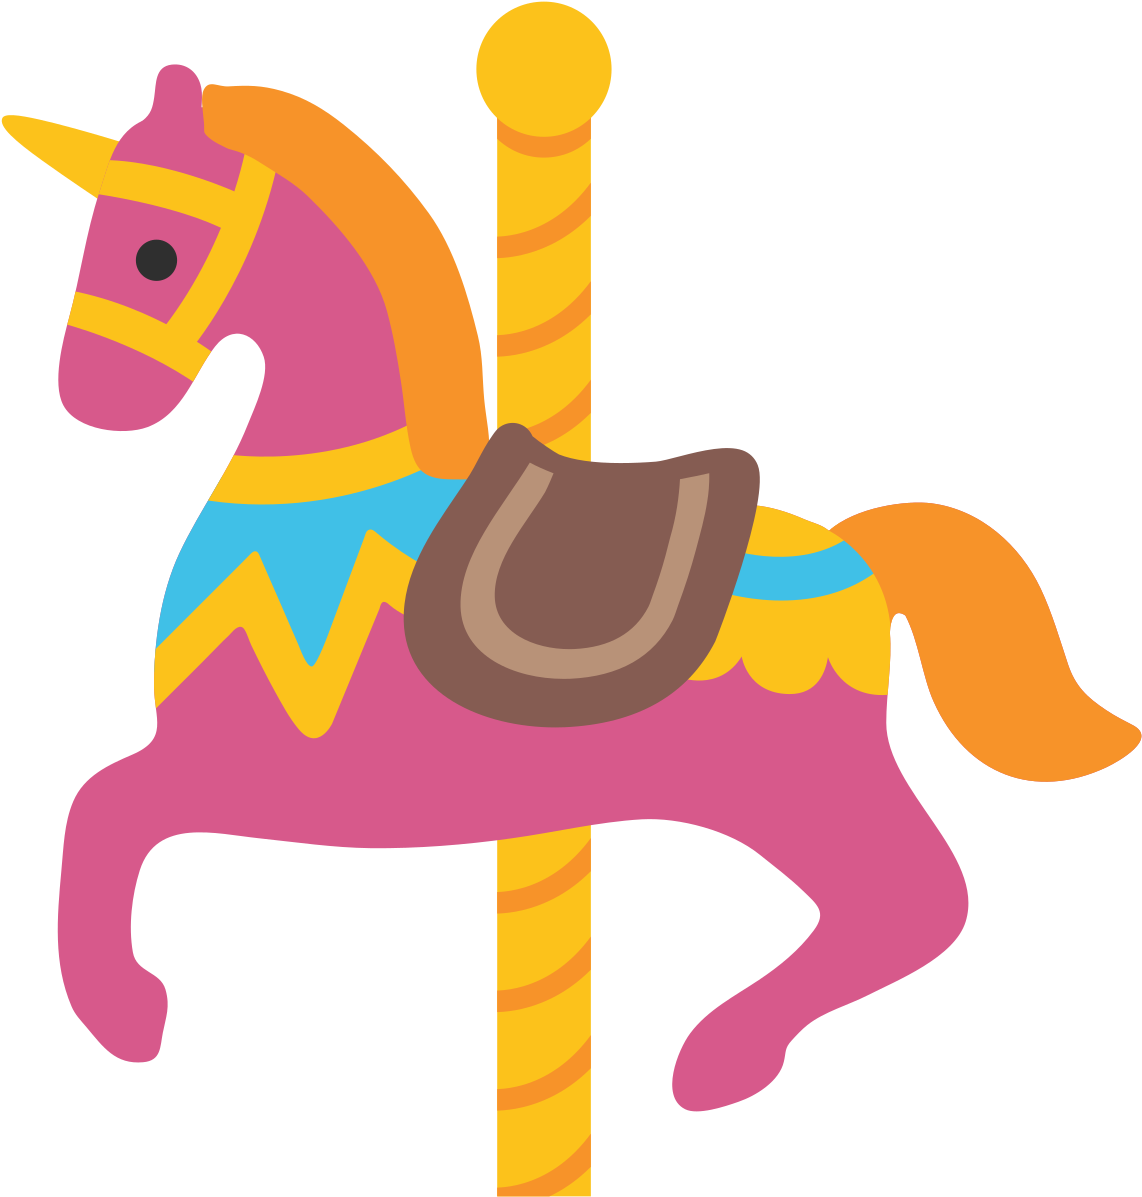 A Cartoon Horse On A Pole